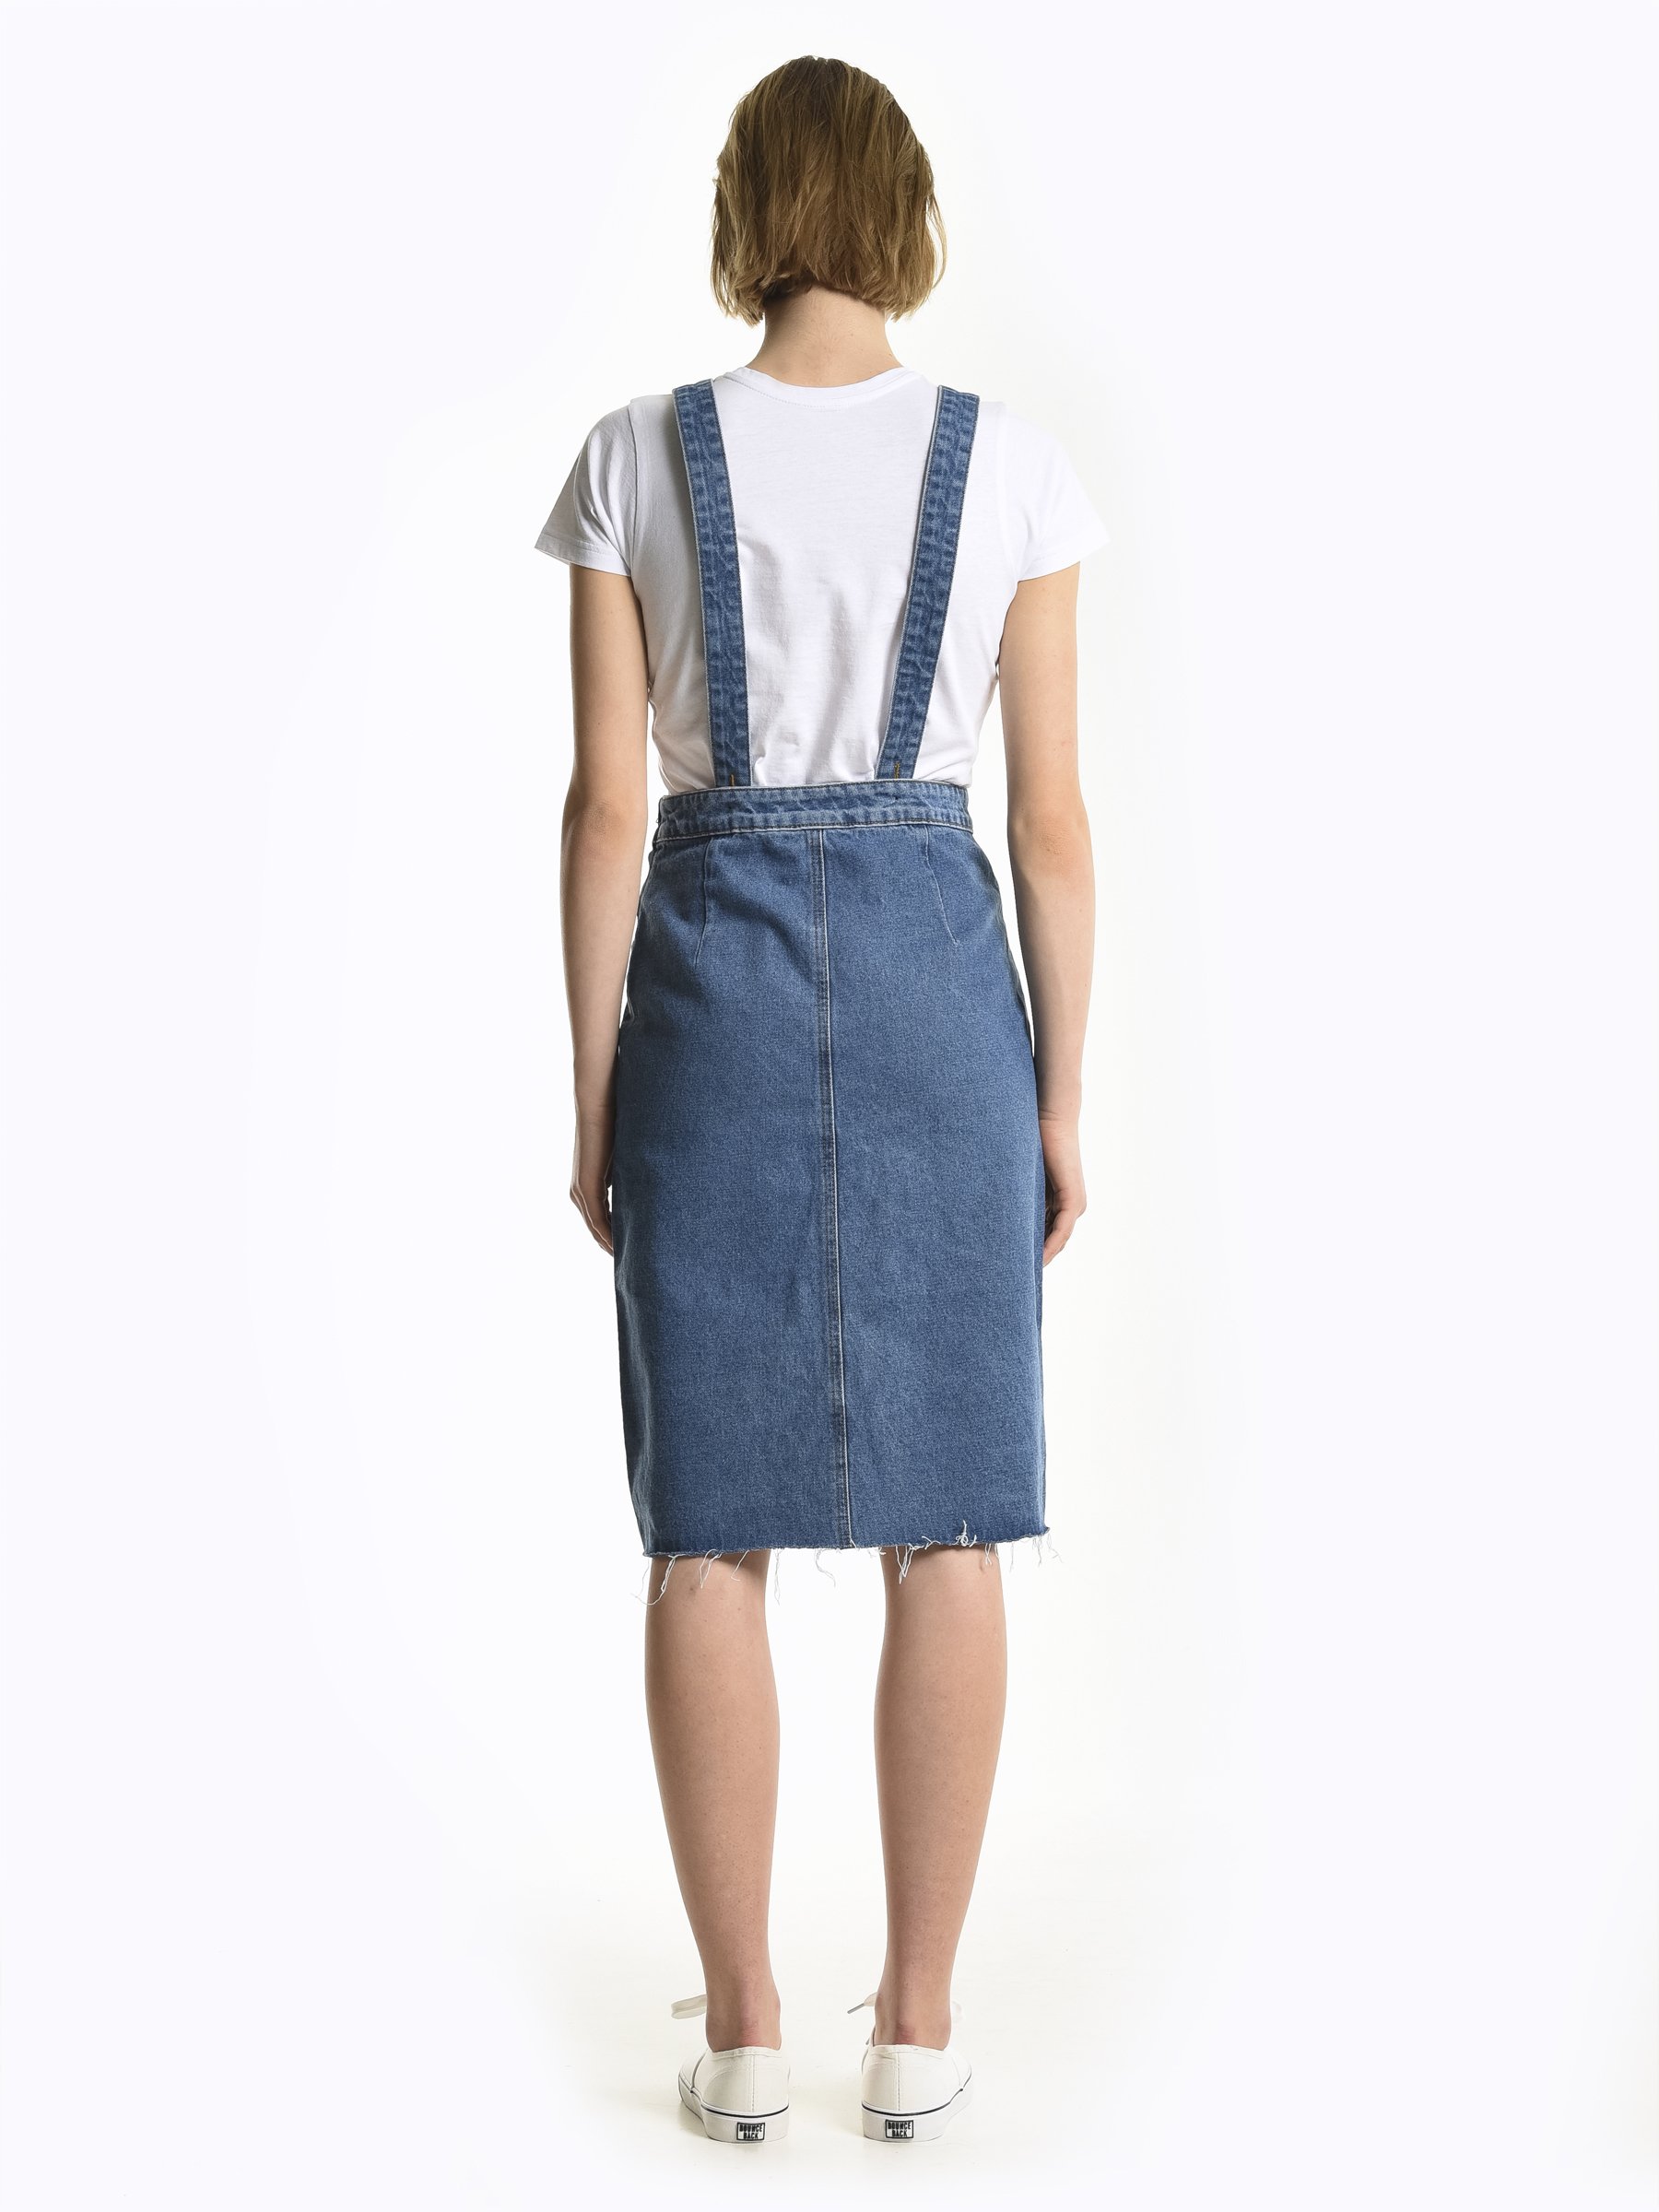 women's denim dungaree skirt